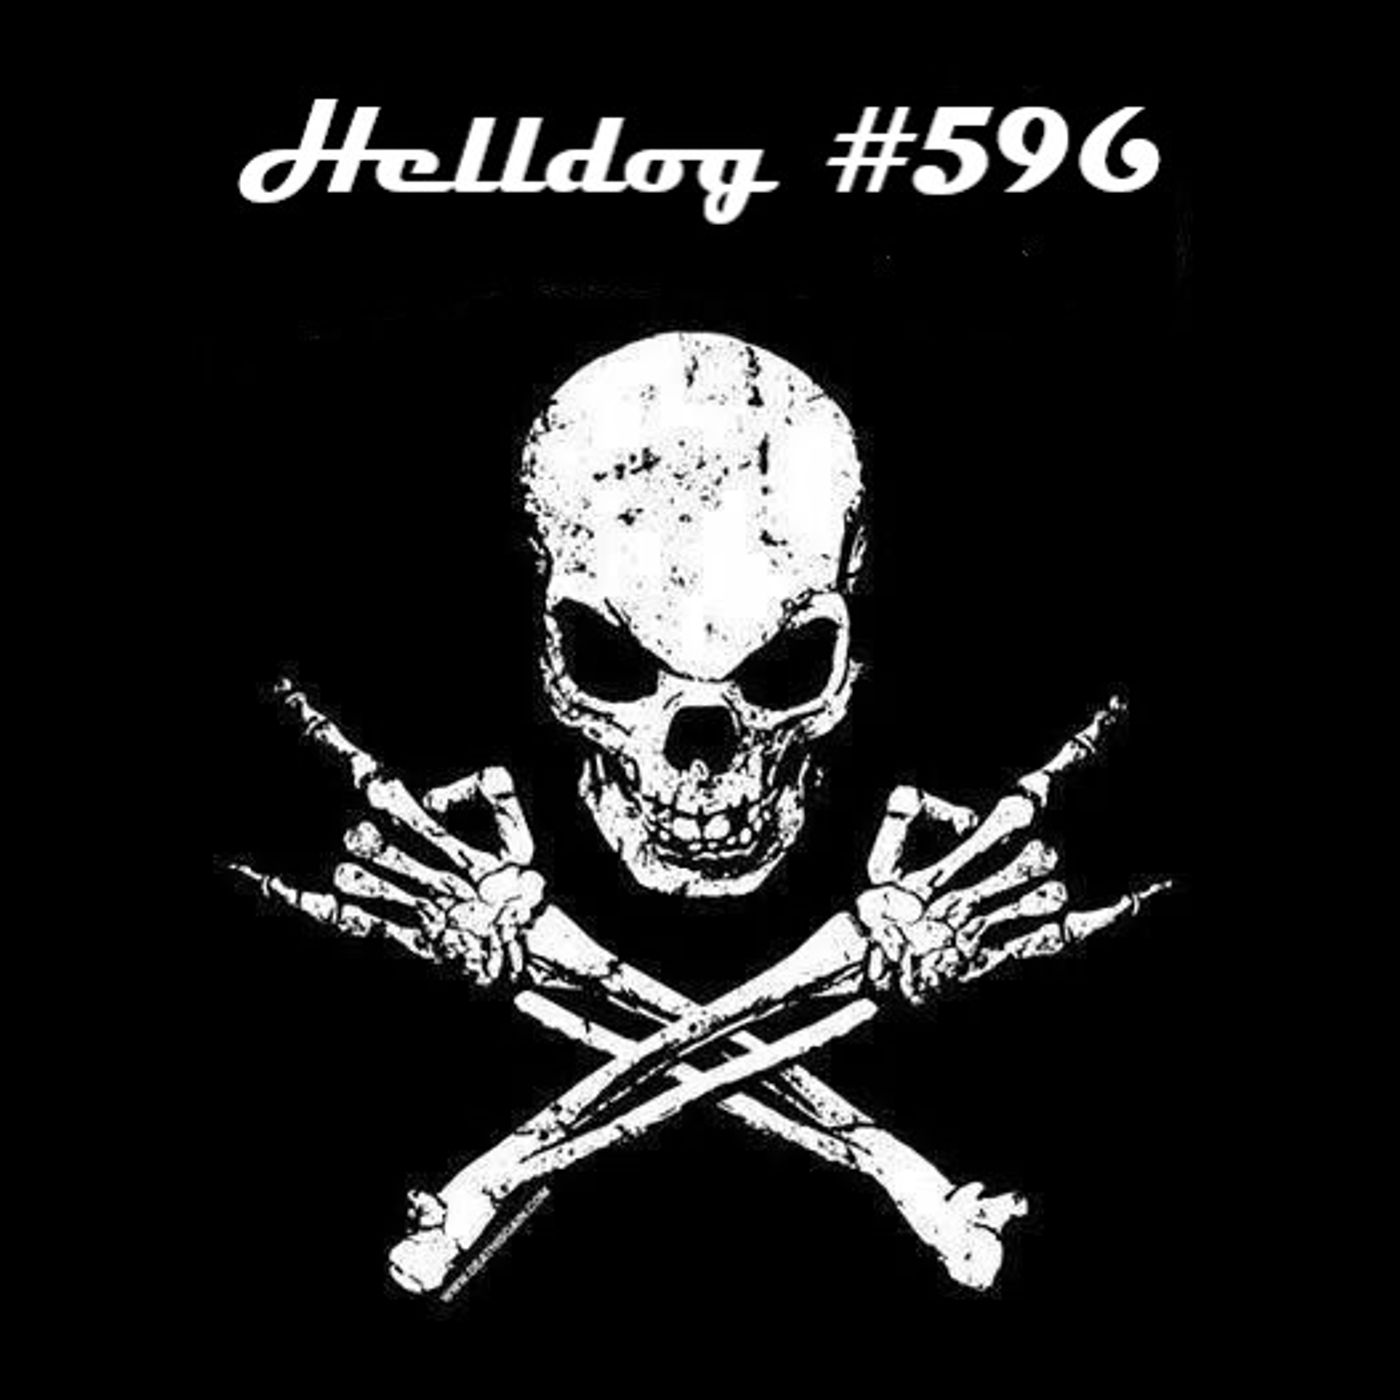 Musicast do Helldog #596 no ar!